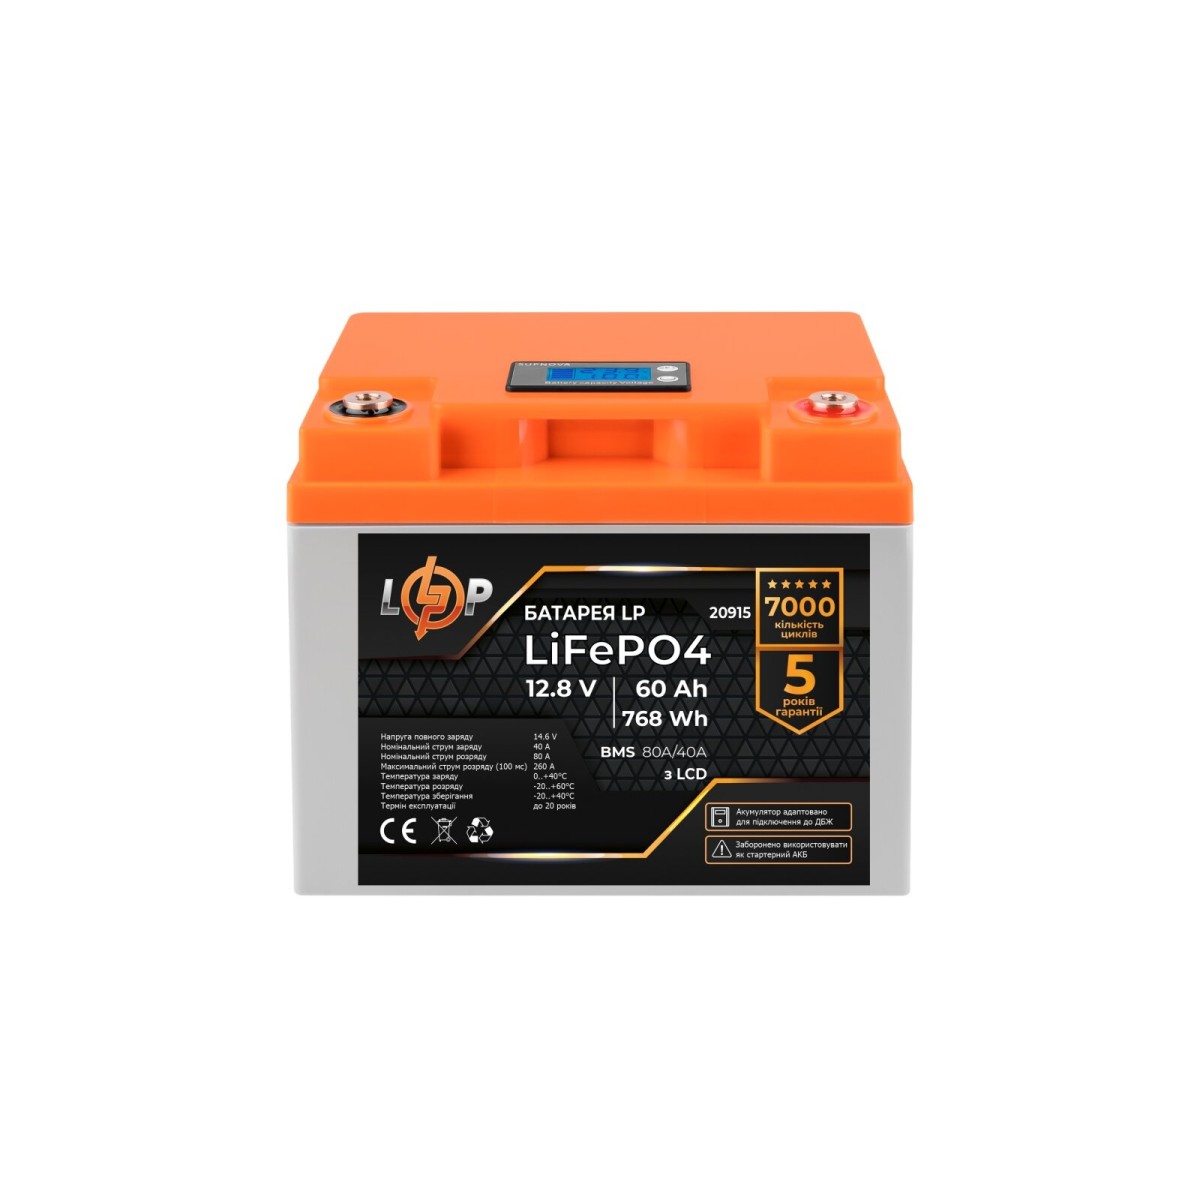 Акумулятор LP LiFePO4 для ДБЖ LCD 12V (12,8V) - 60 Ah (768Wh) (BMS 80A/40А) пластик 256_256.jpg